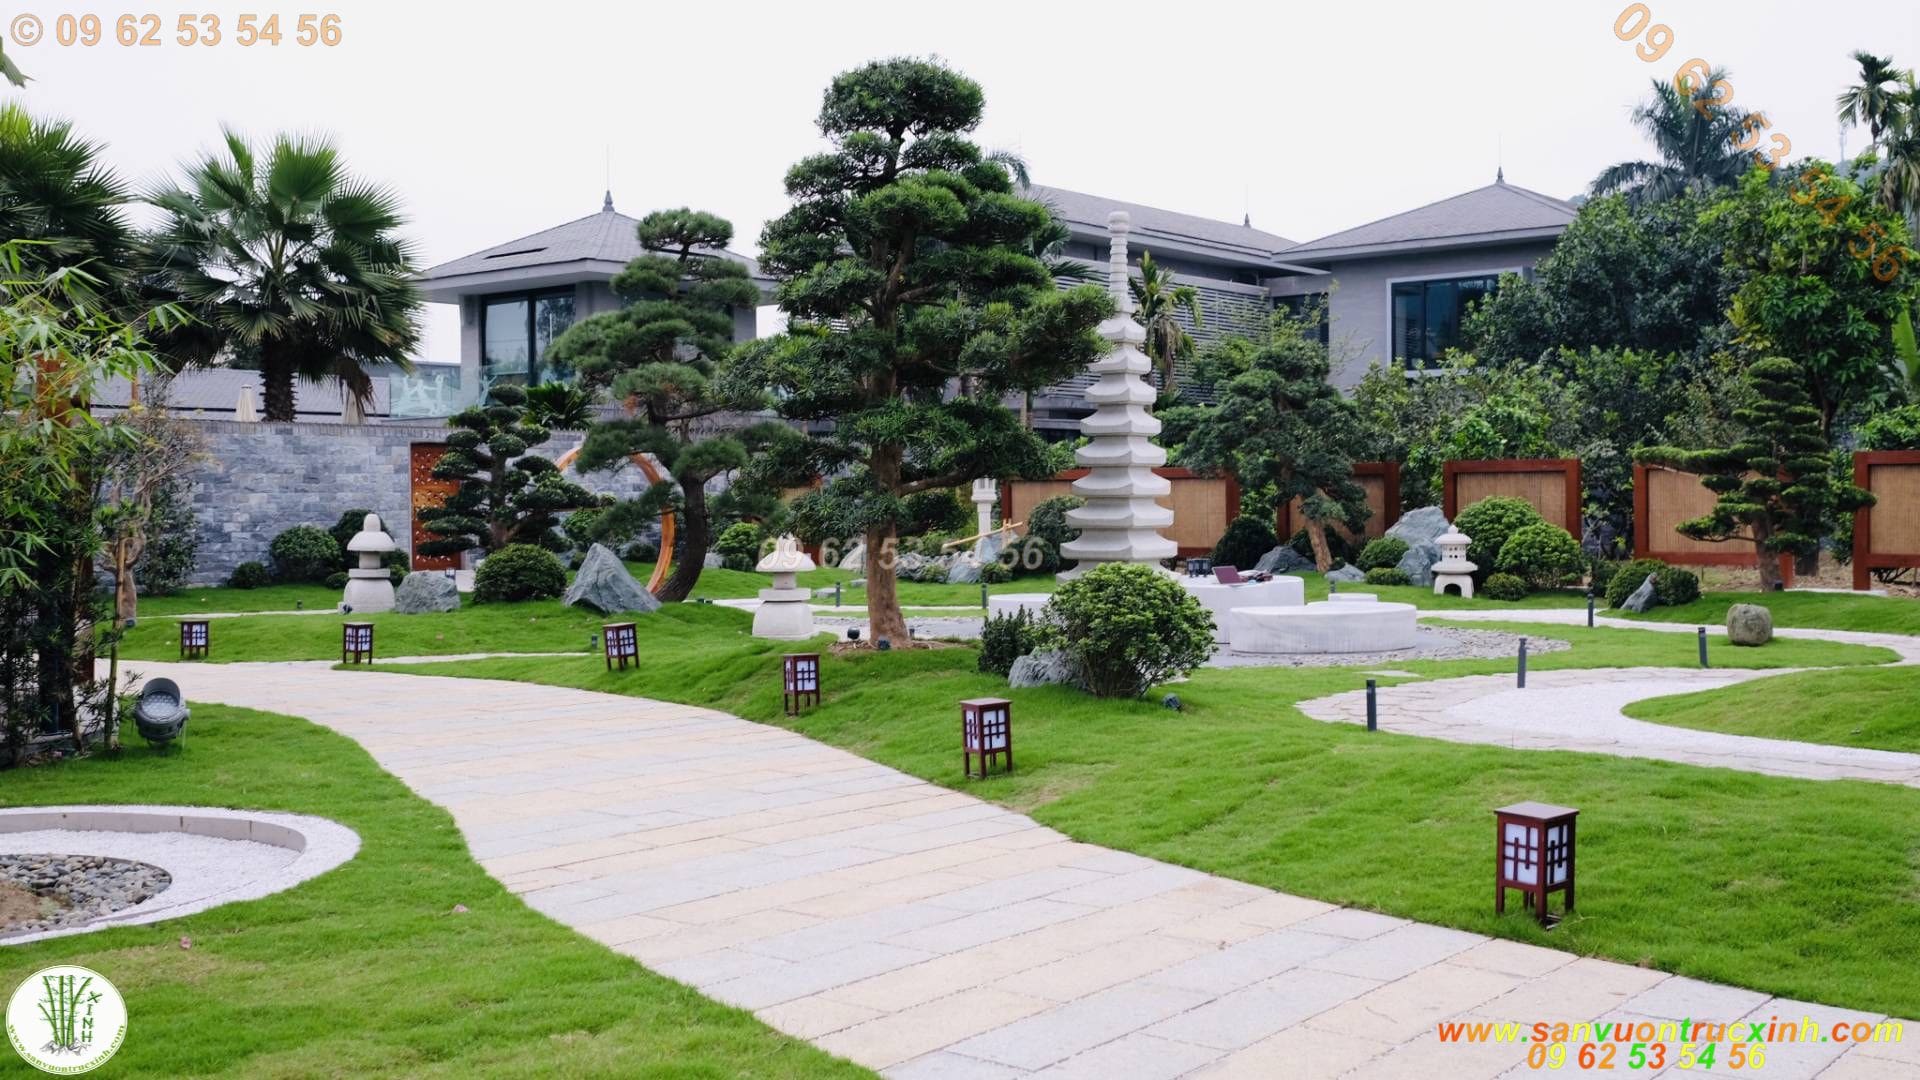 Thi công hoàn thiện sân vườn biệt thự theo phong cách Nhật Bản